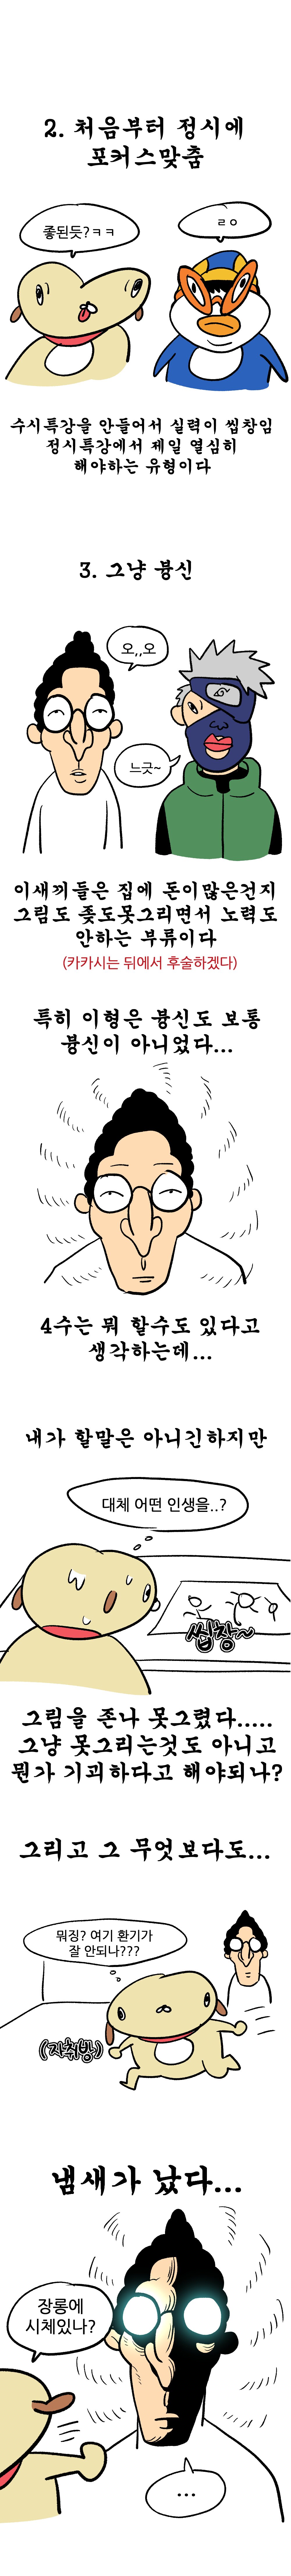 스압) 싱글벙글 입시미술 中.manhwa